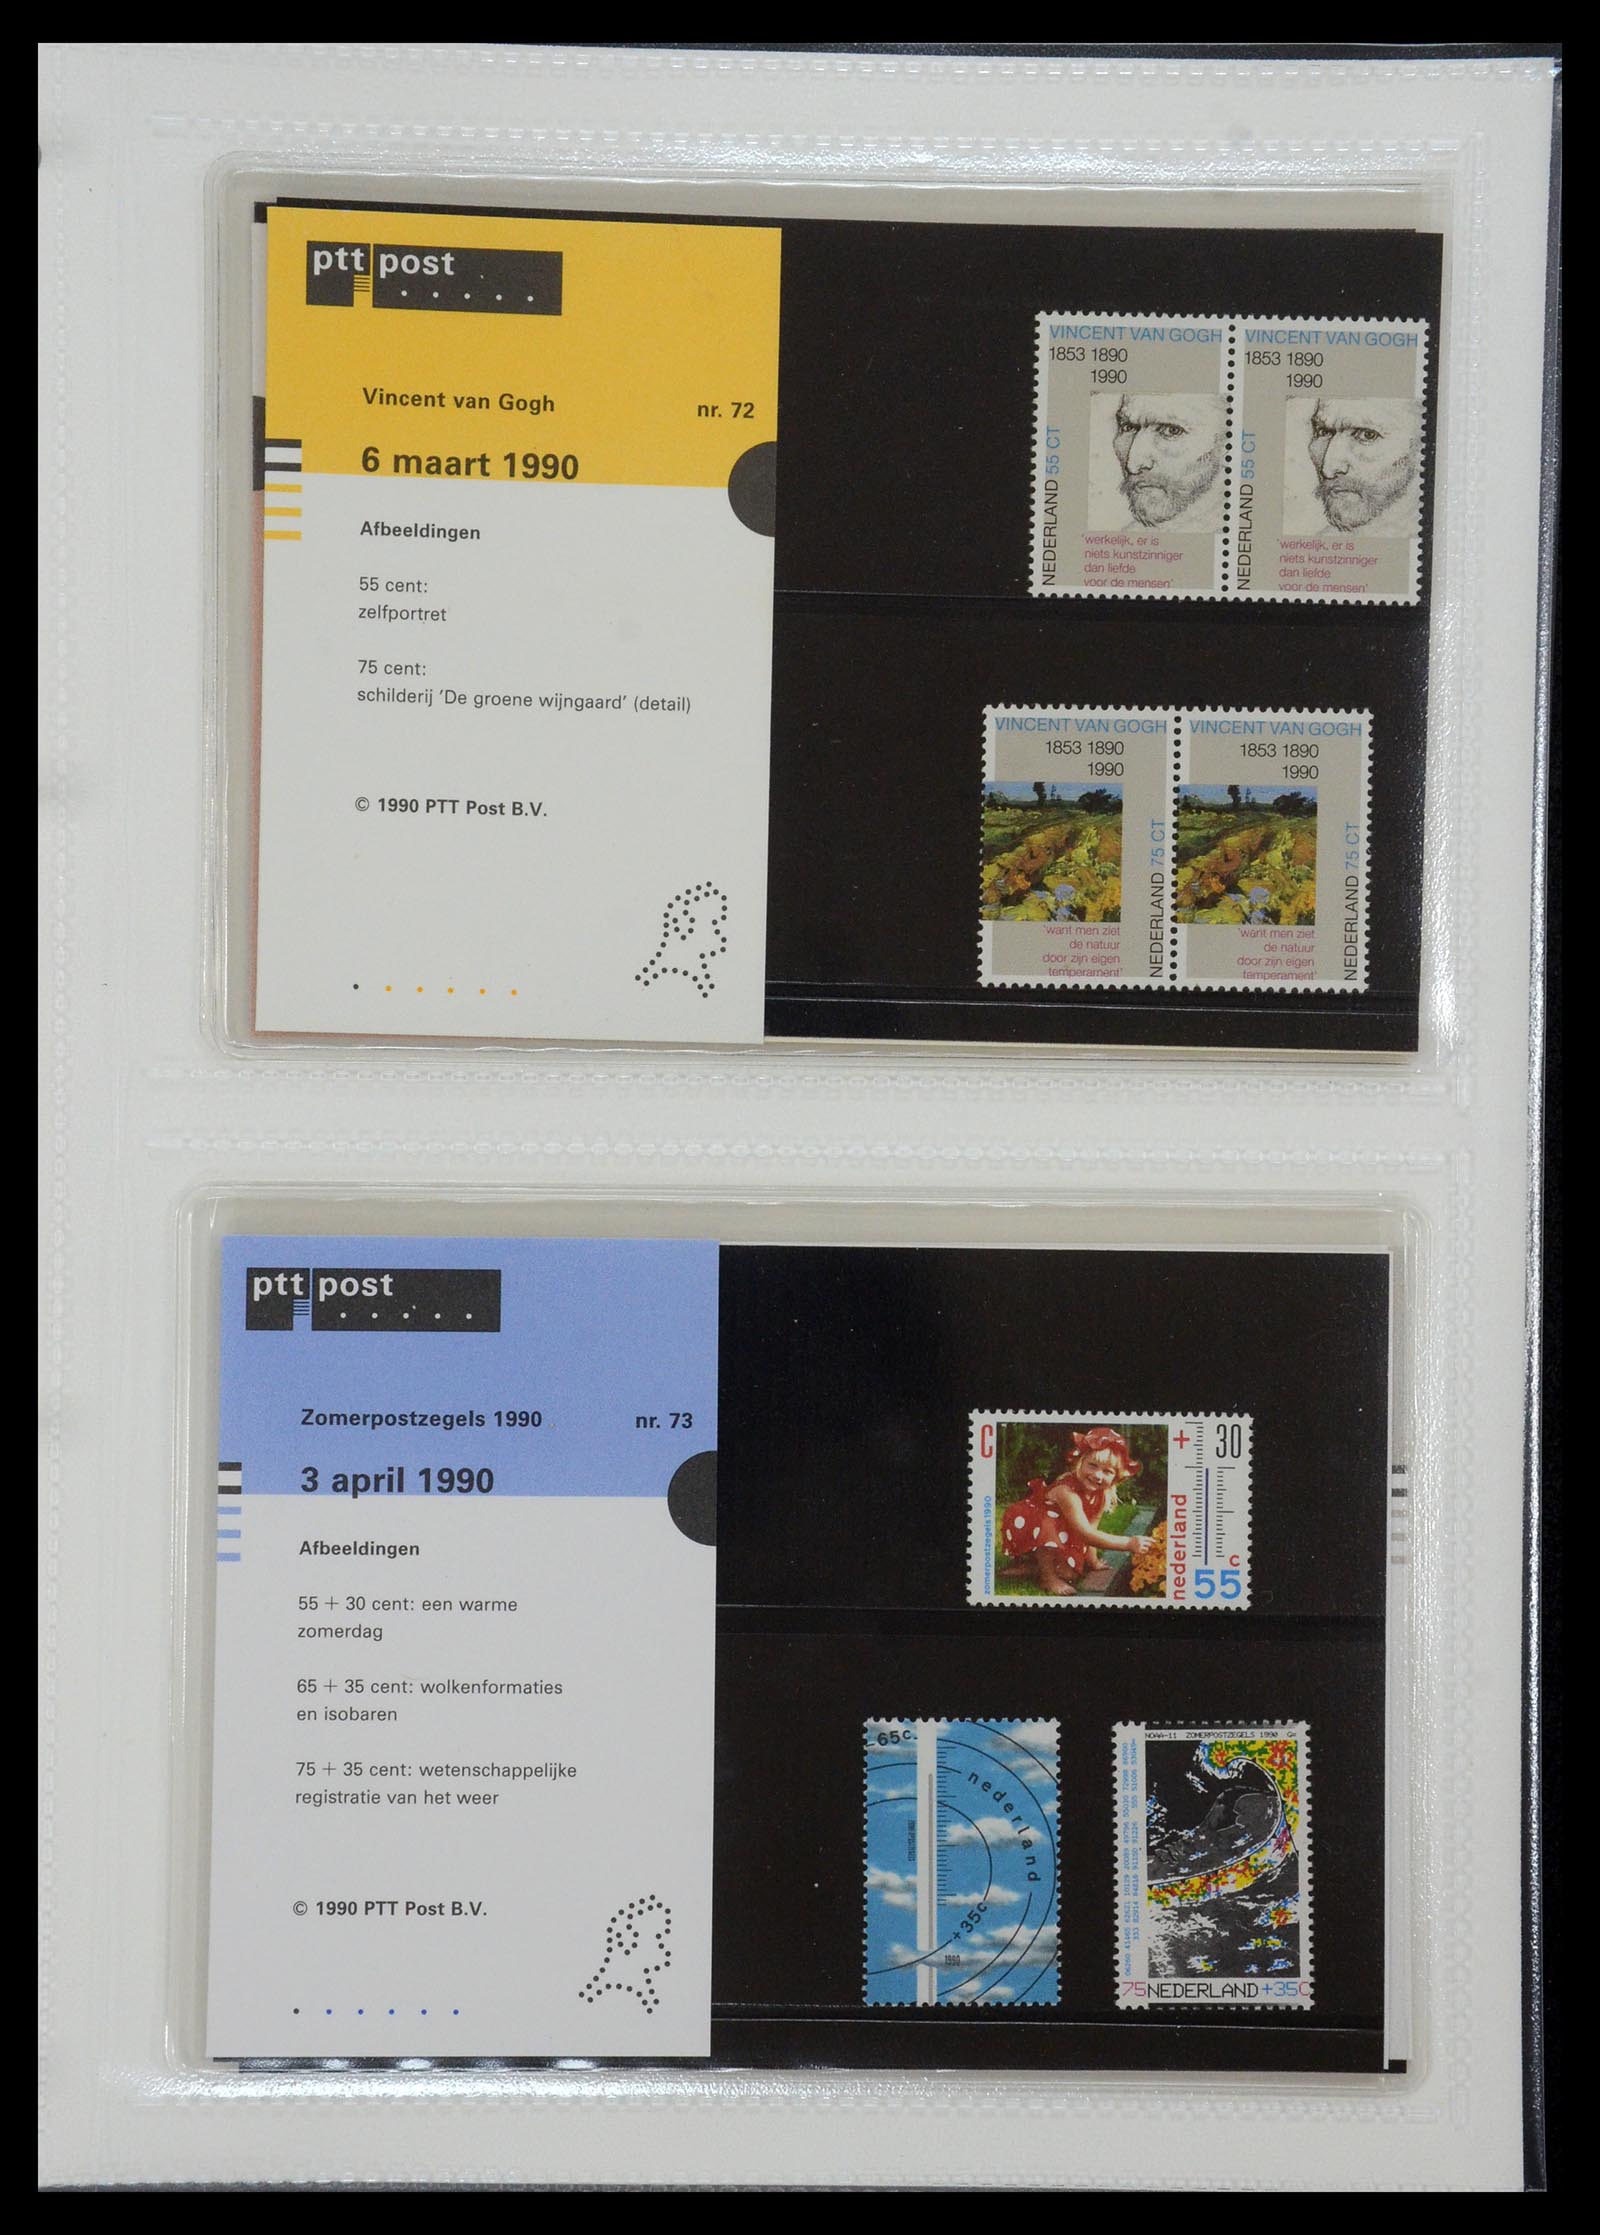 35144 037 - Stamp Collection 35144 Netherlands PTT presentation packs 1982-2021!